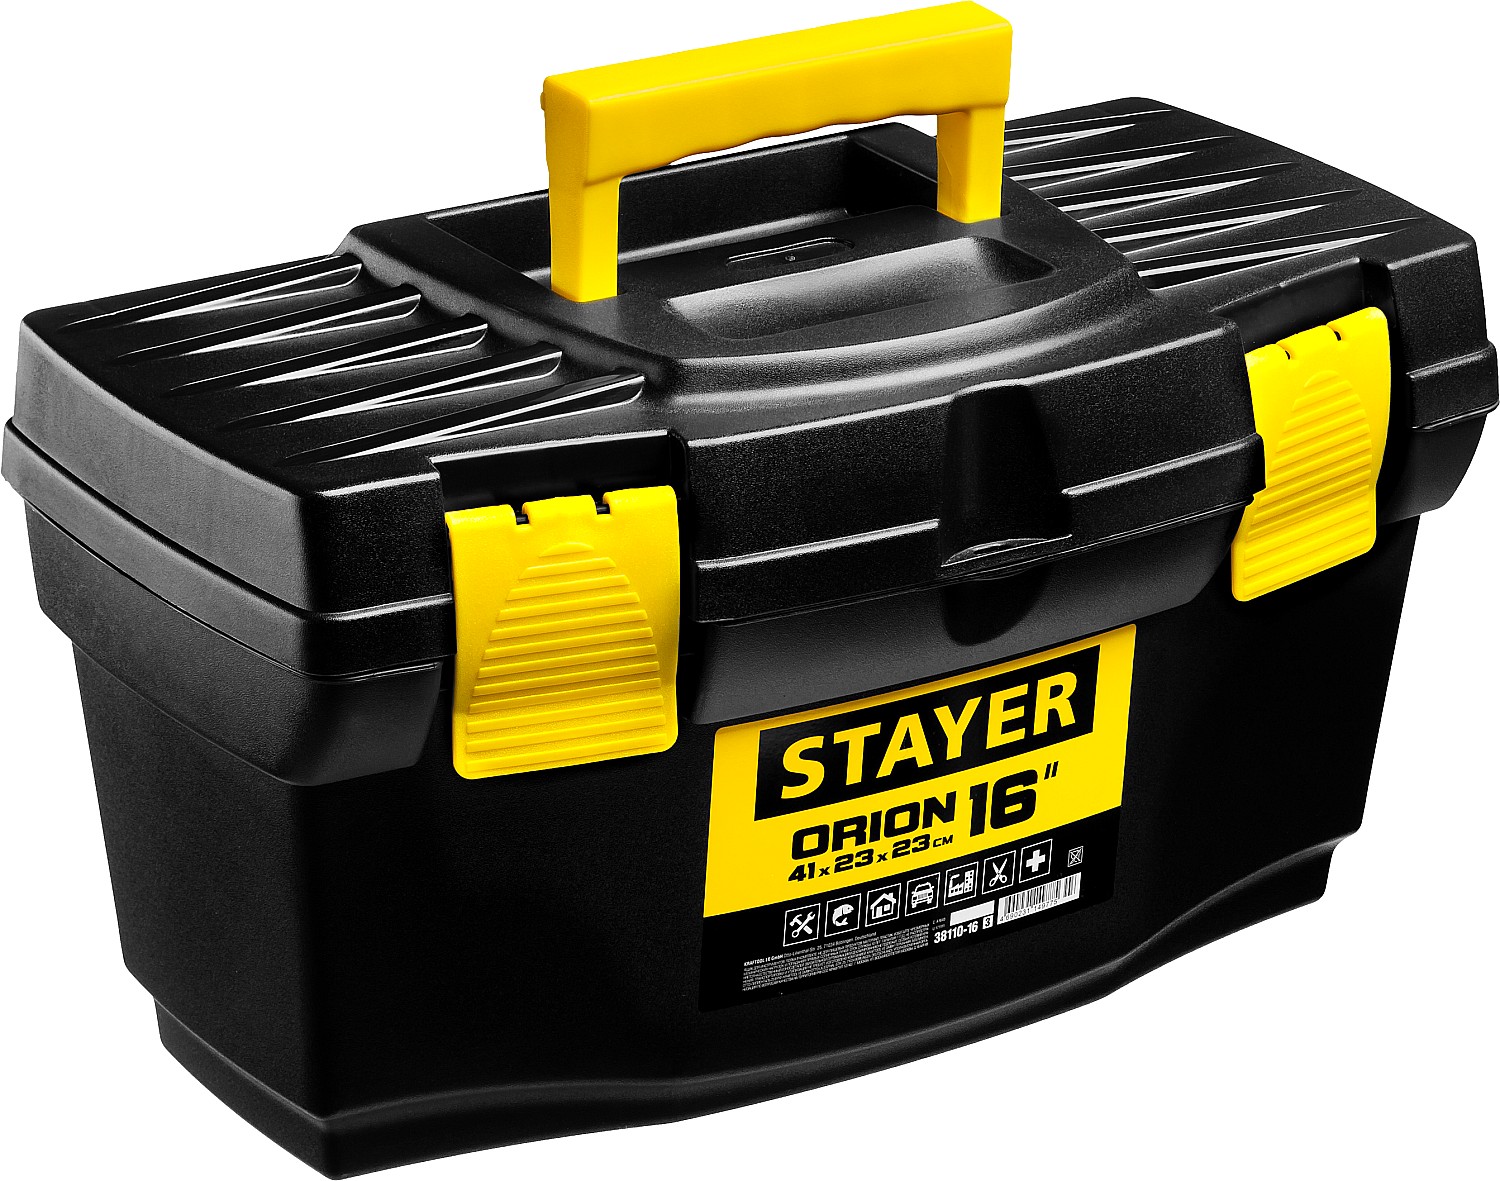 ящик для инструмента stayer standard 24 пластмассовый 38105 21 z01 38105 21 z02 Ящик для инструмента STAYER ORION-16 пластиковый